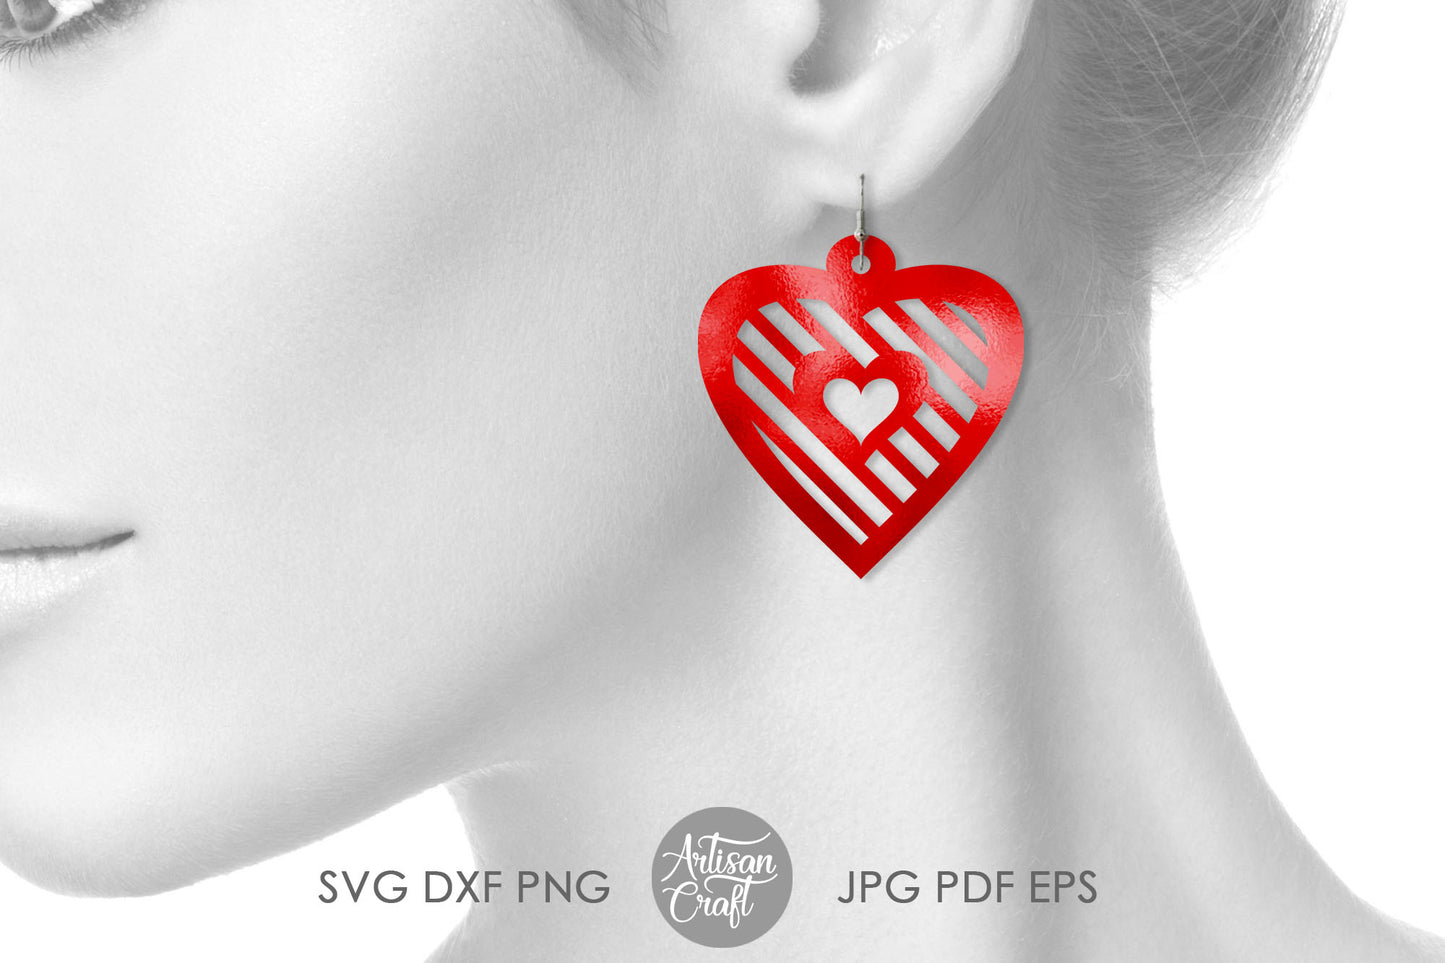 Heart earrings SVG